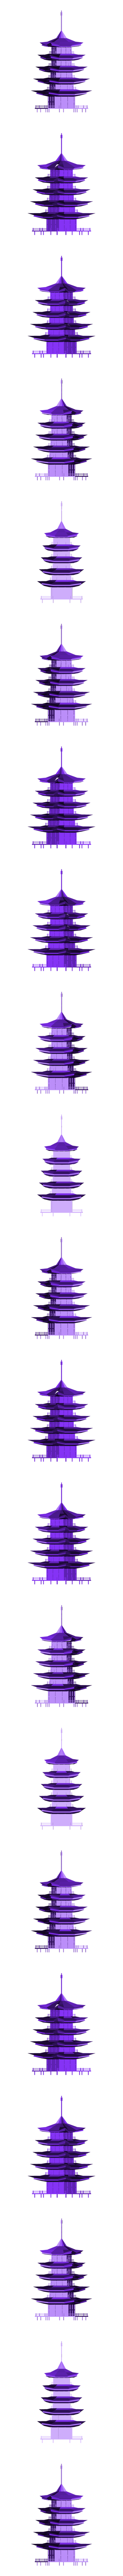 Pagoda.obj Archivo OBJ gratuito Pagoda・Design para impresora 3D para descargar, Colorful3D